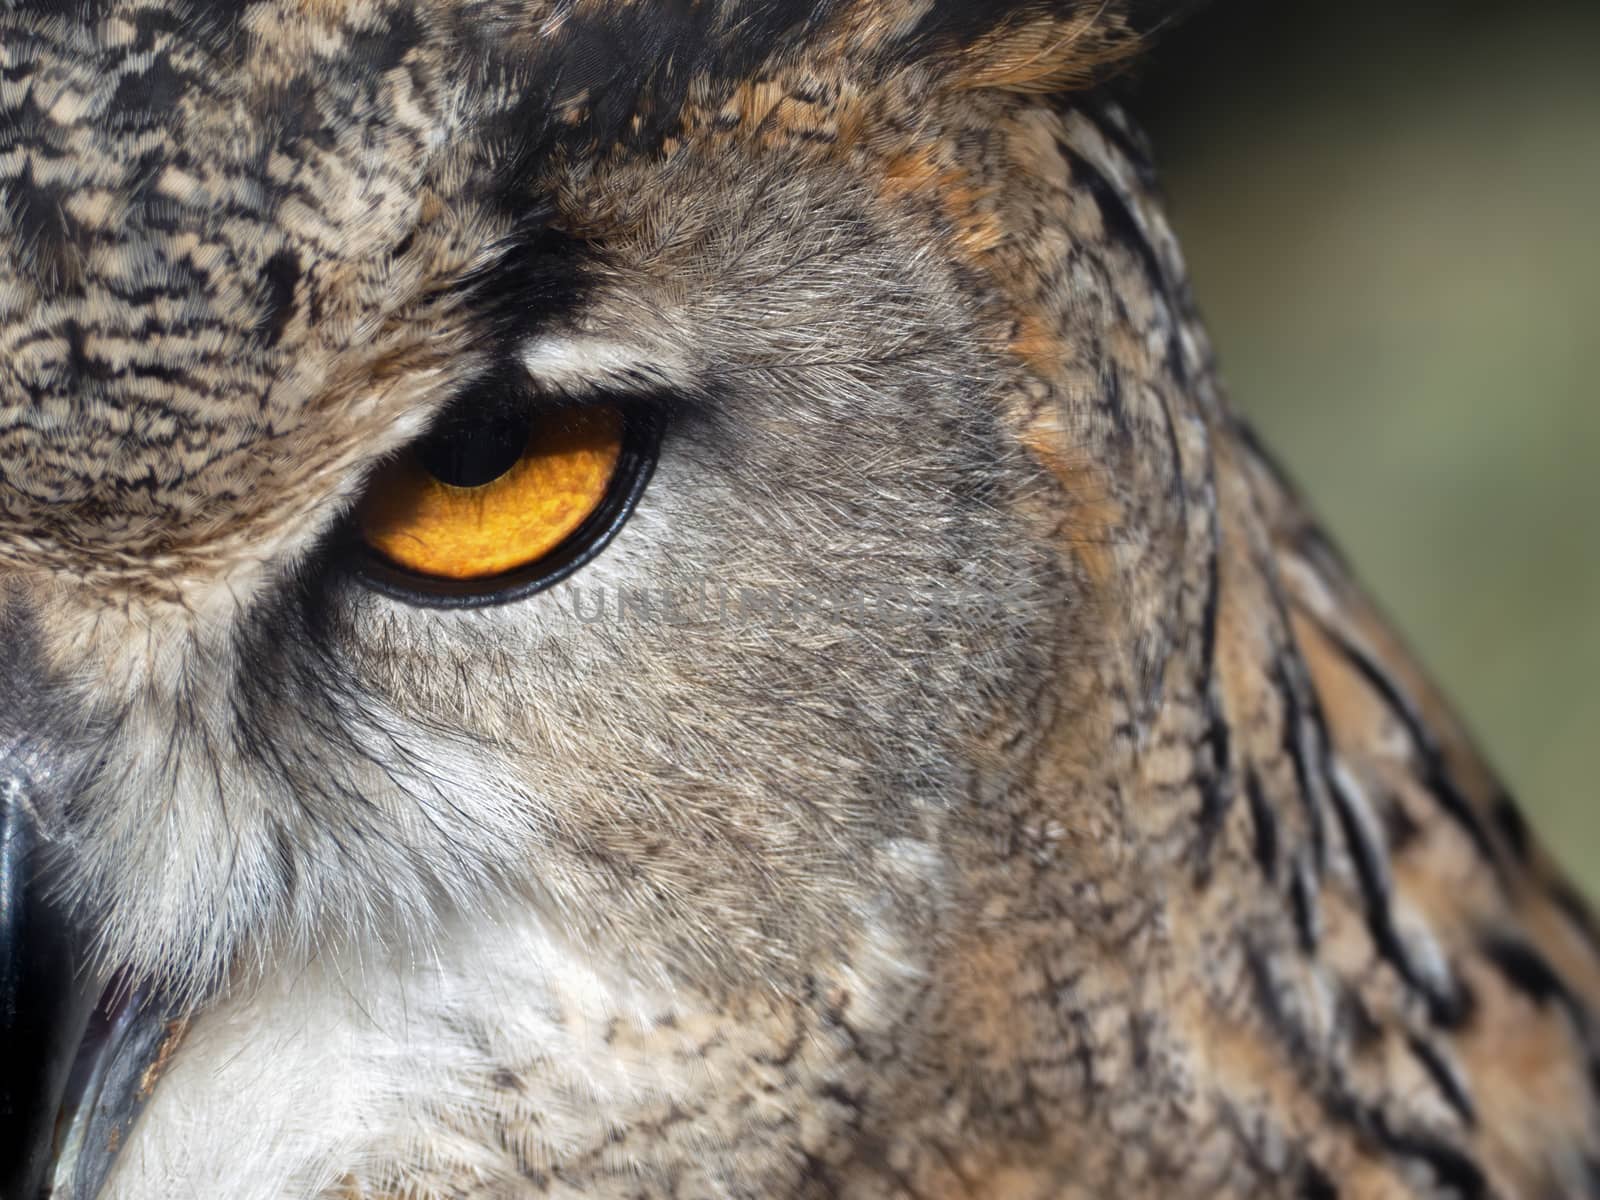 close-up of an owl